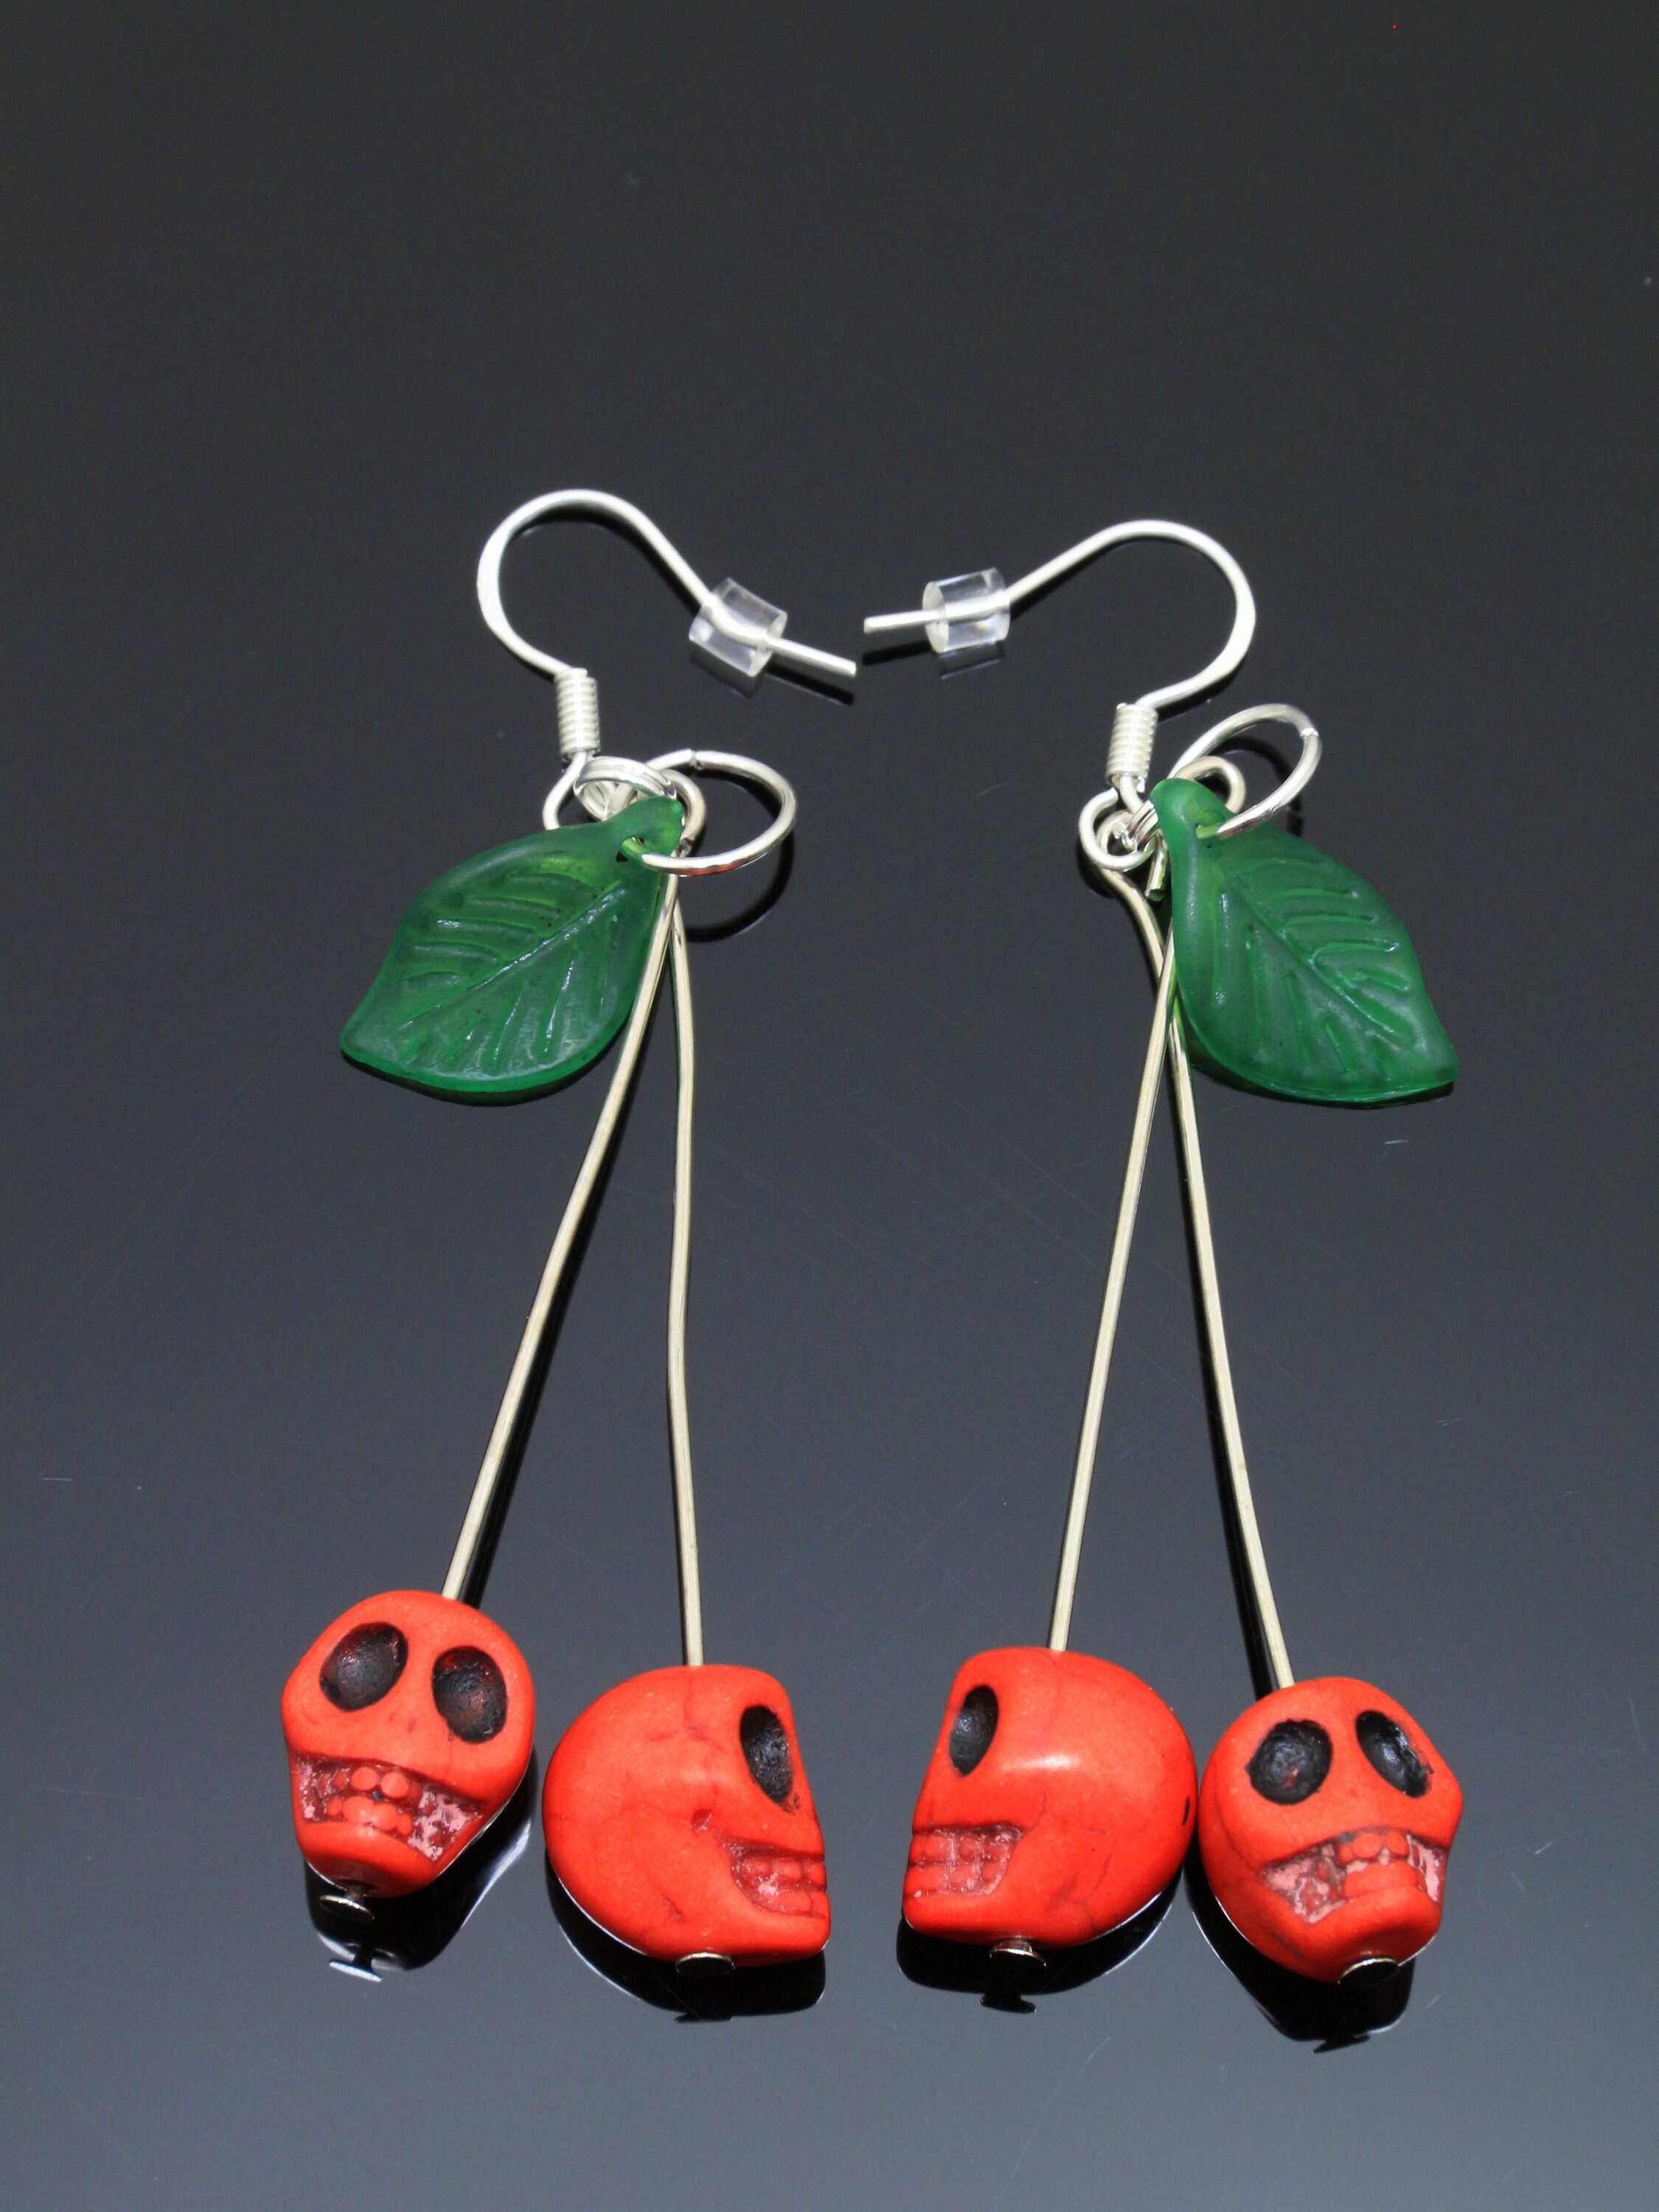 Handmade Red Skull Cherry Earrings Rockabilly Earrings Pinup Jewelry kitsch earring pin up funky earrings quirky earrings